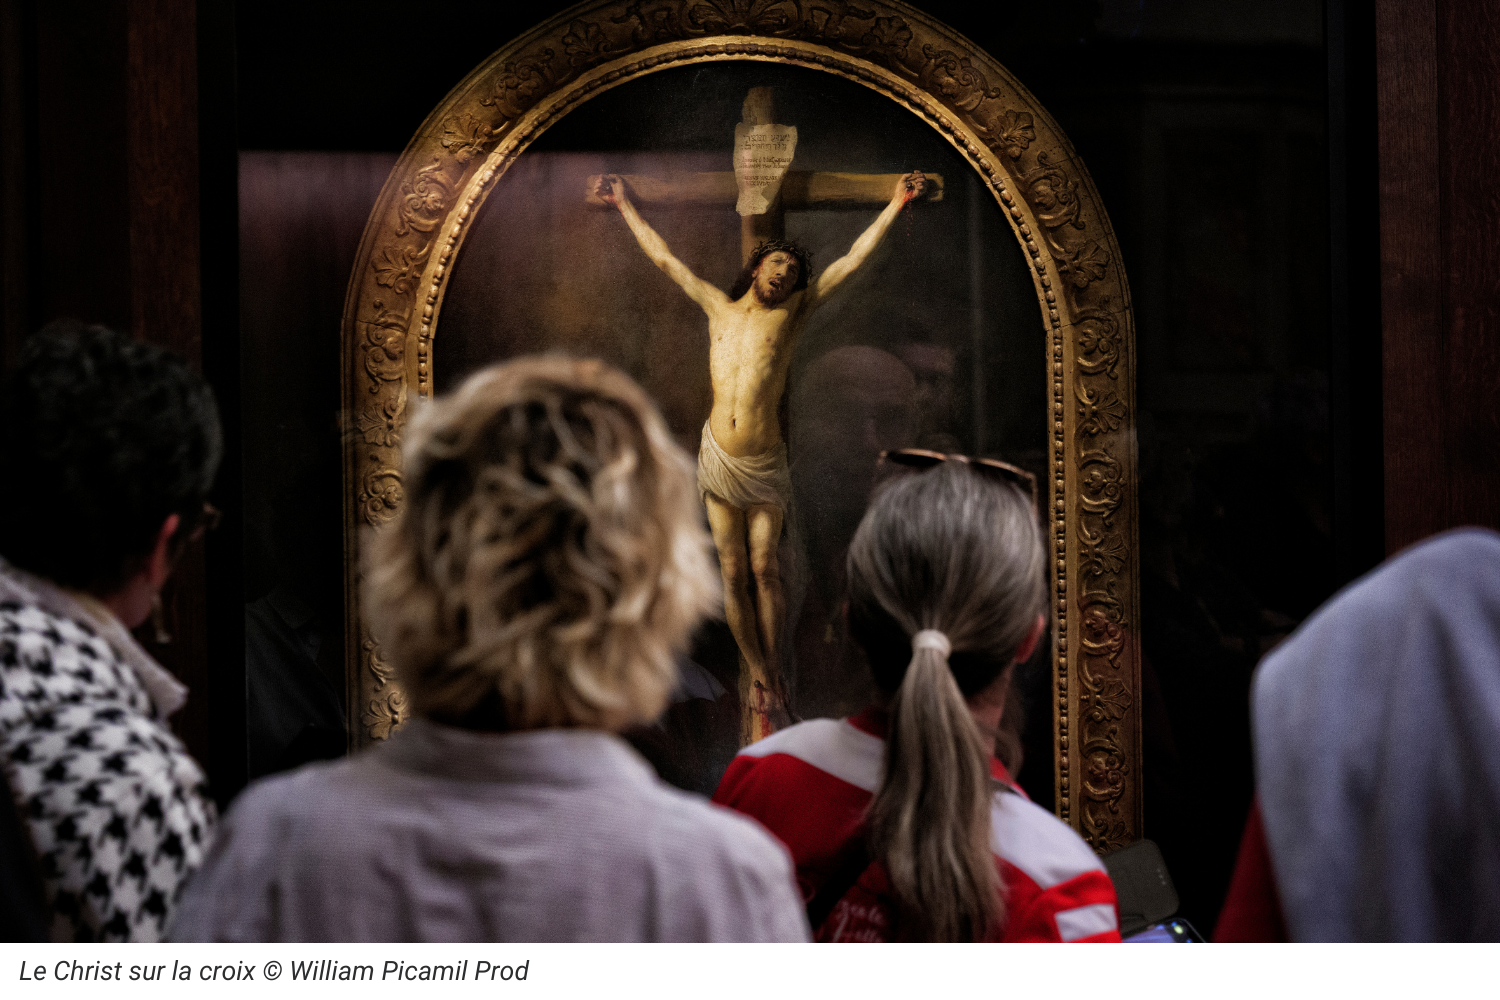 Le Christ sur la croix © William Picamil Prod